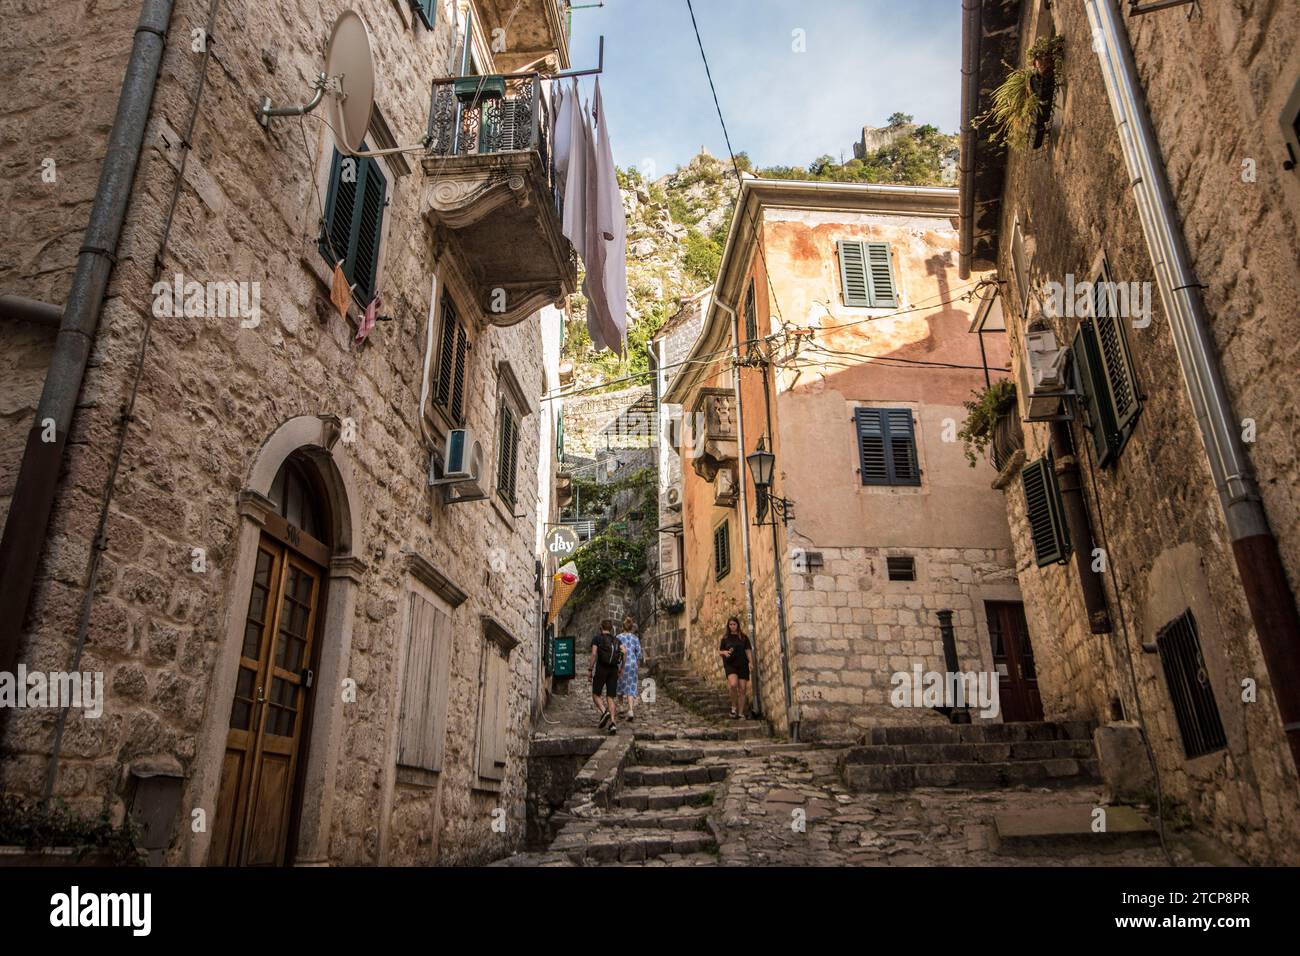 Eine Straße in der Altstadt, die in Richtung der Verteidigung des UNESCO-geschützten Kotor, Montenegro, führt Stockfoto